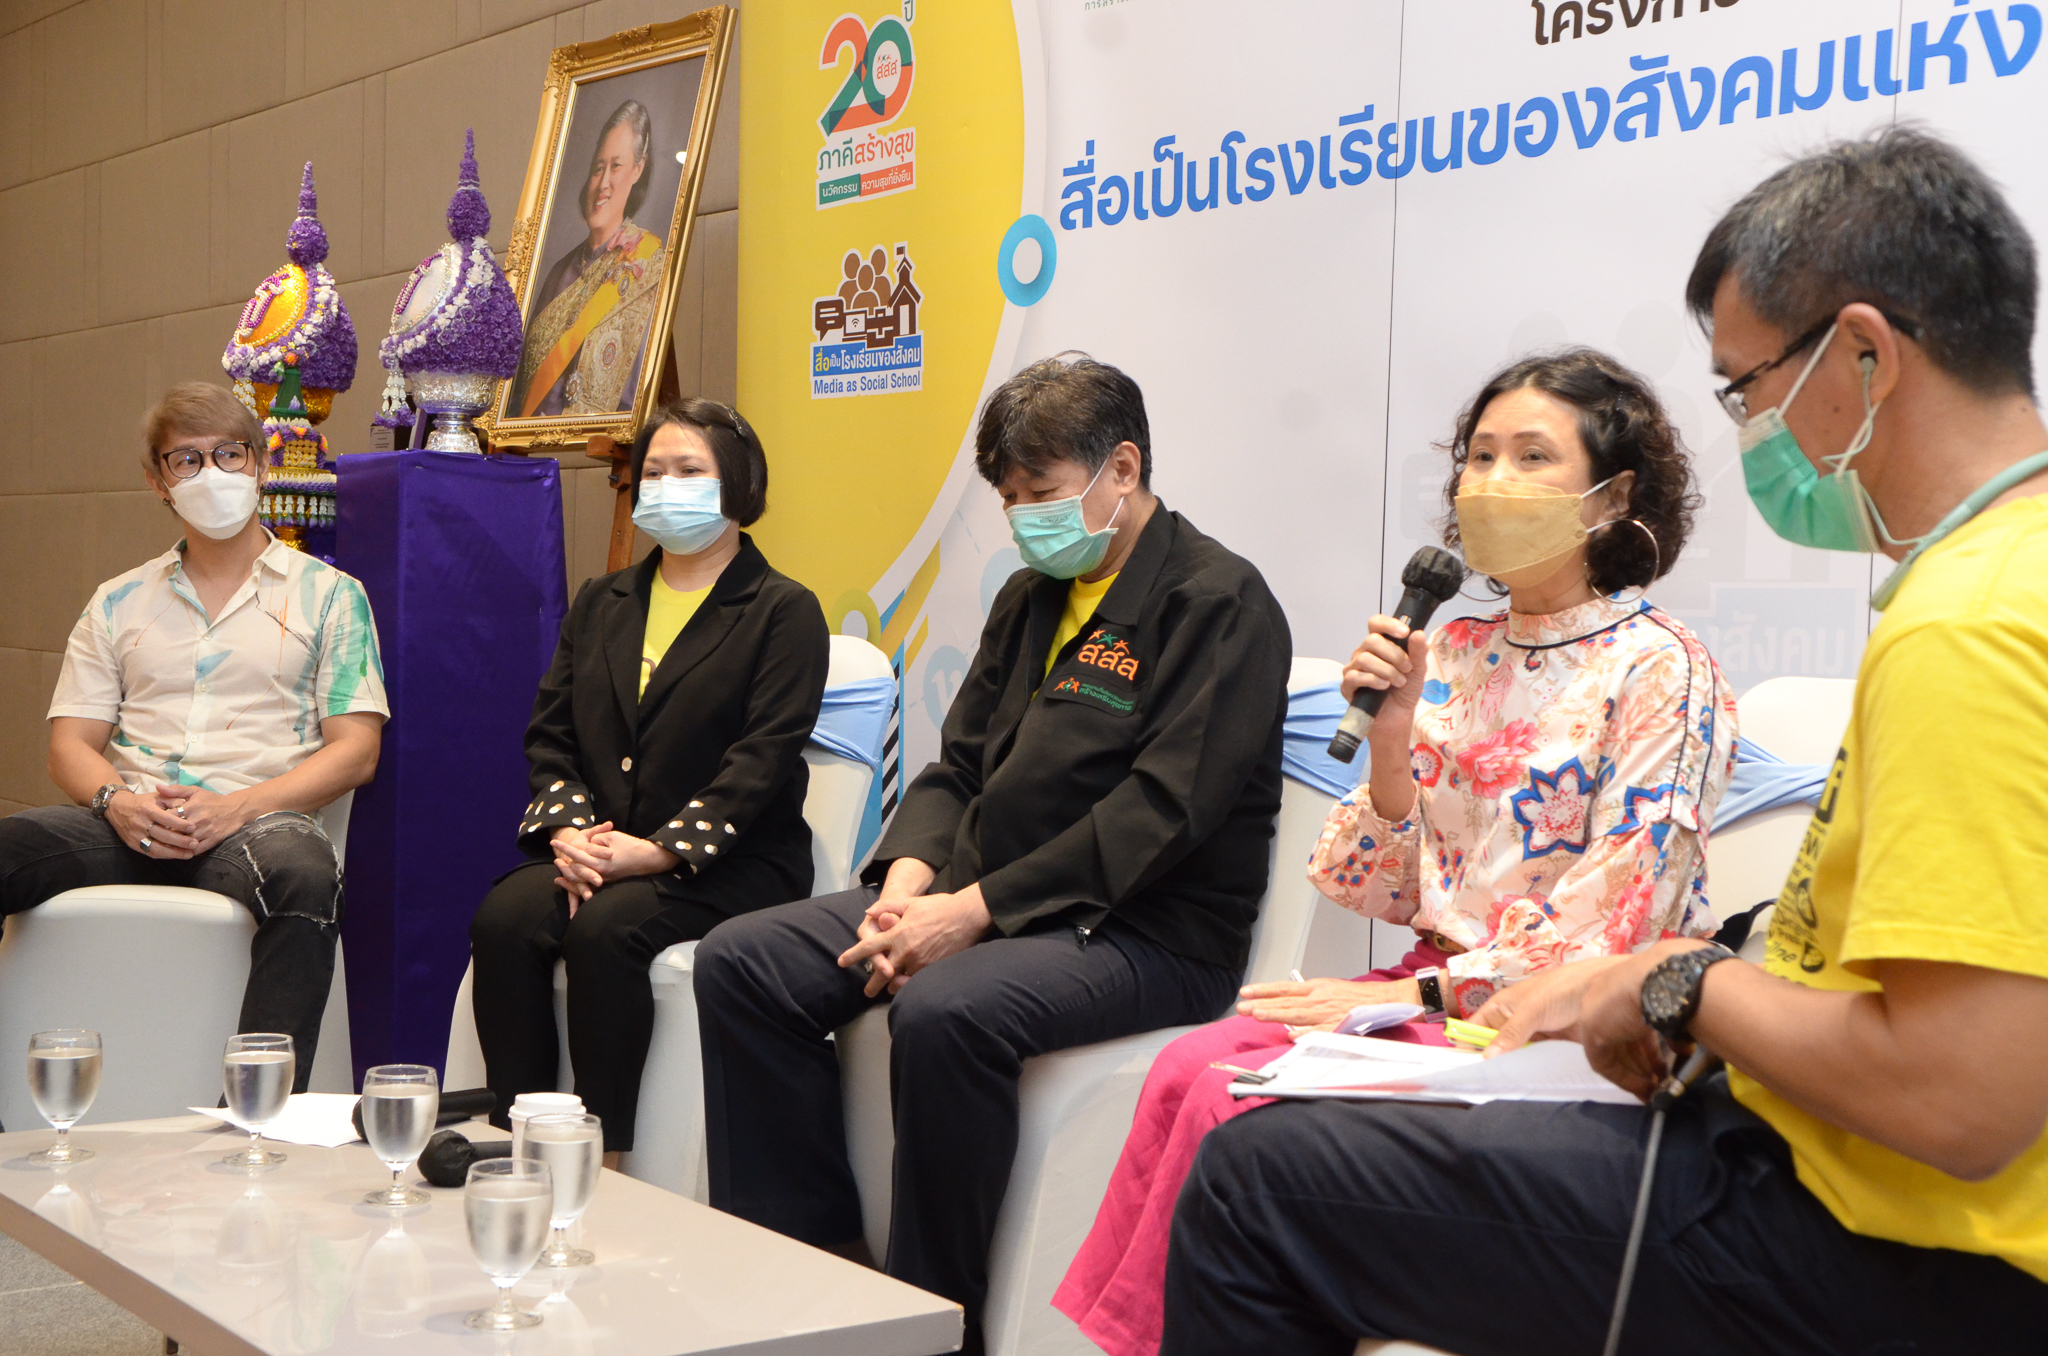 TRIPPLE BEE  ส่งสารคดีแม่วัยใส คว้ารางวัลสุดยอดผลงานสื่อเป็นโรงเรียนของสังคม  thaihealth